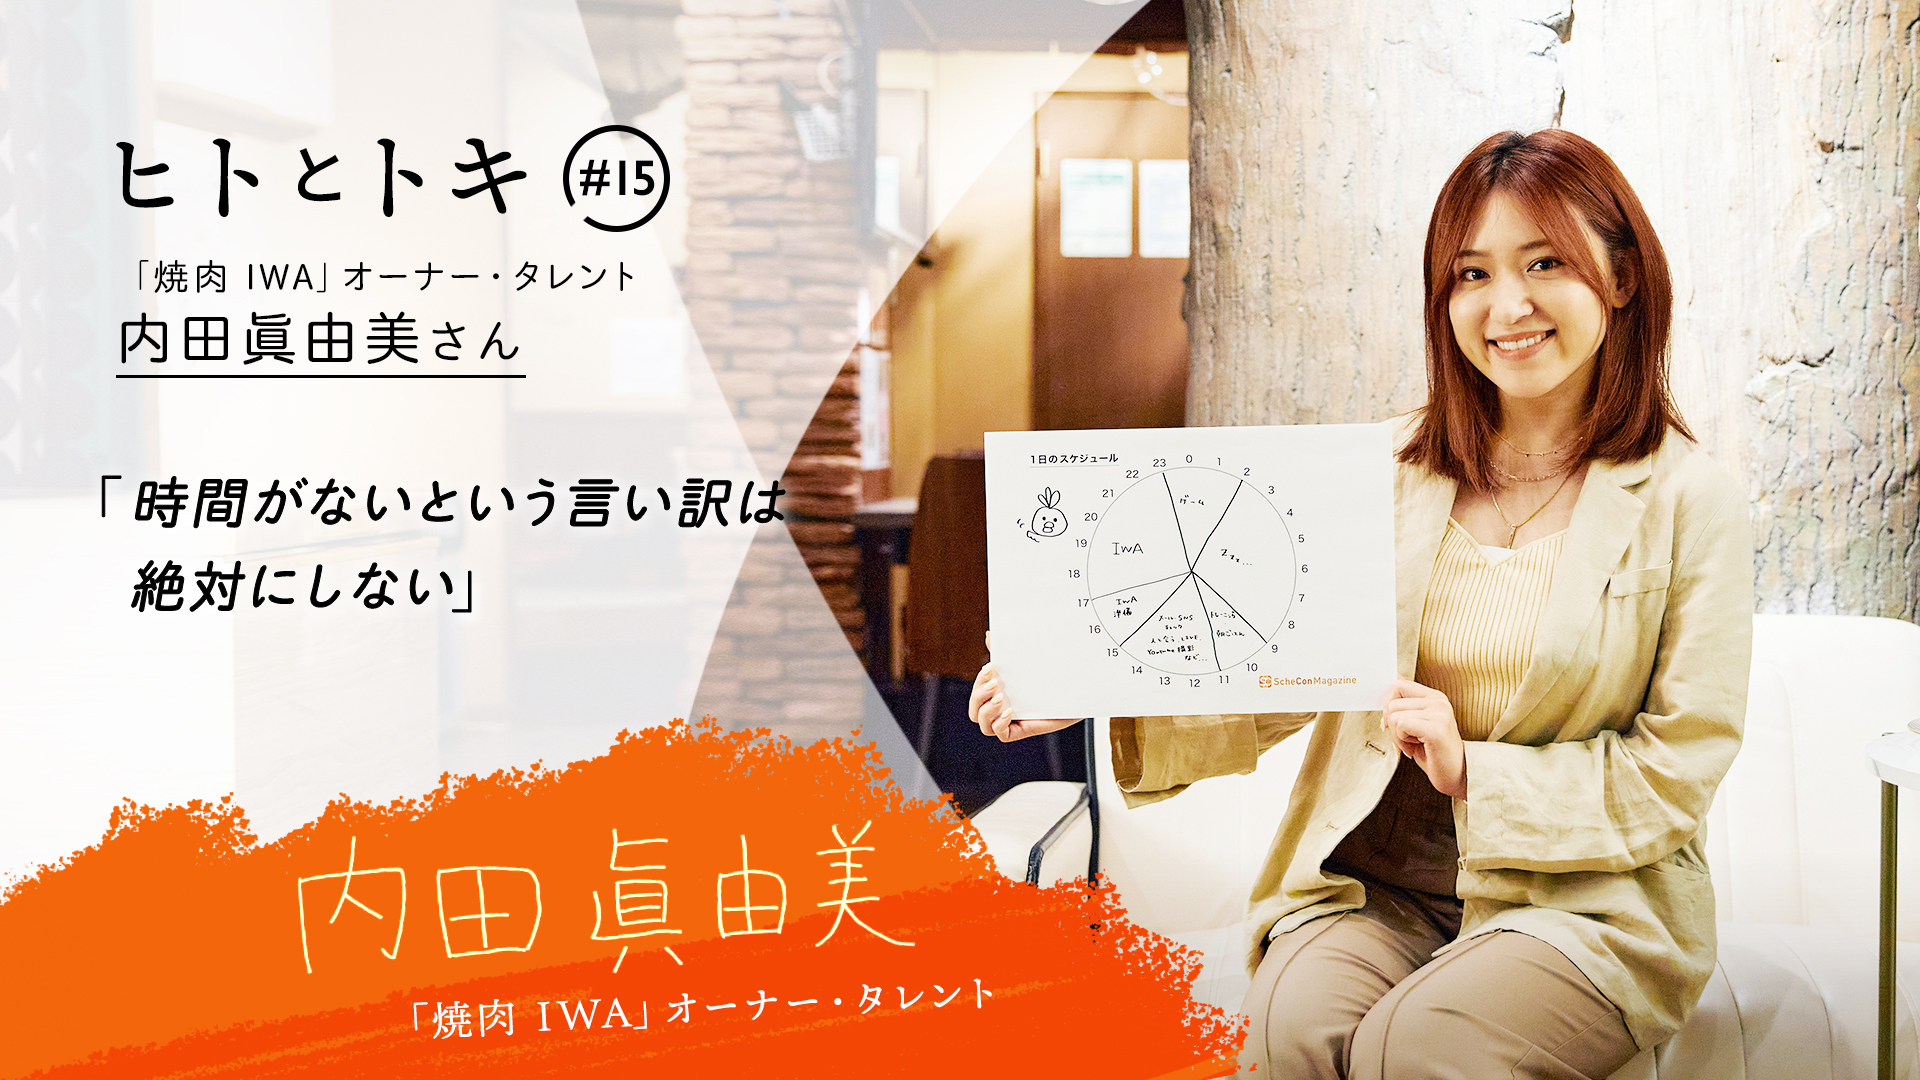 【ヒトとトキ #15】元AKB48の「焼肉 IWA」オーナー・内田眞由美さん 「時間がないという言い訳は絶対にしない」